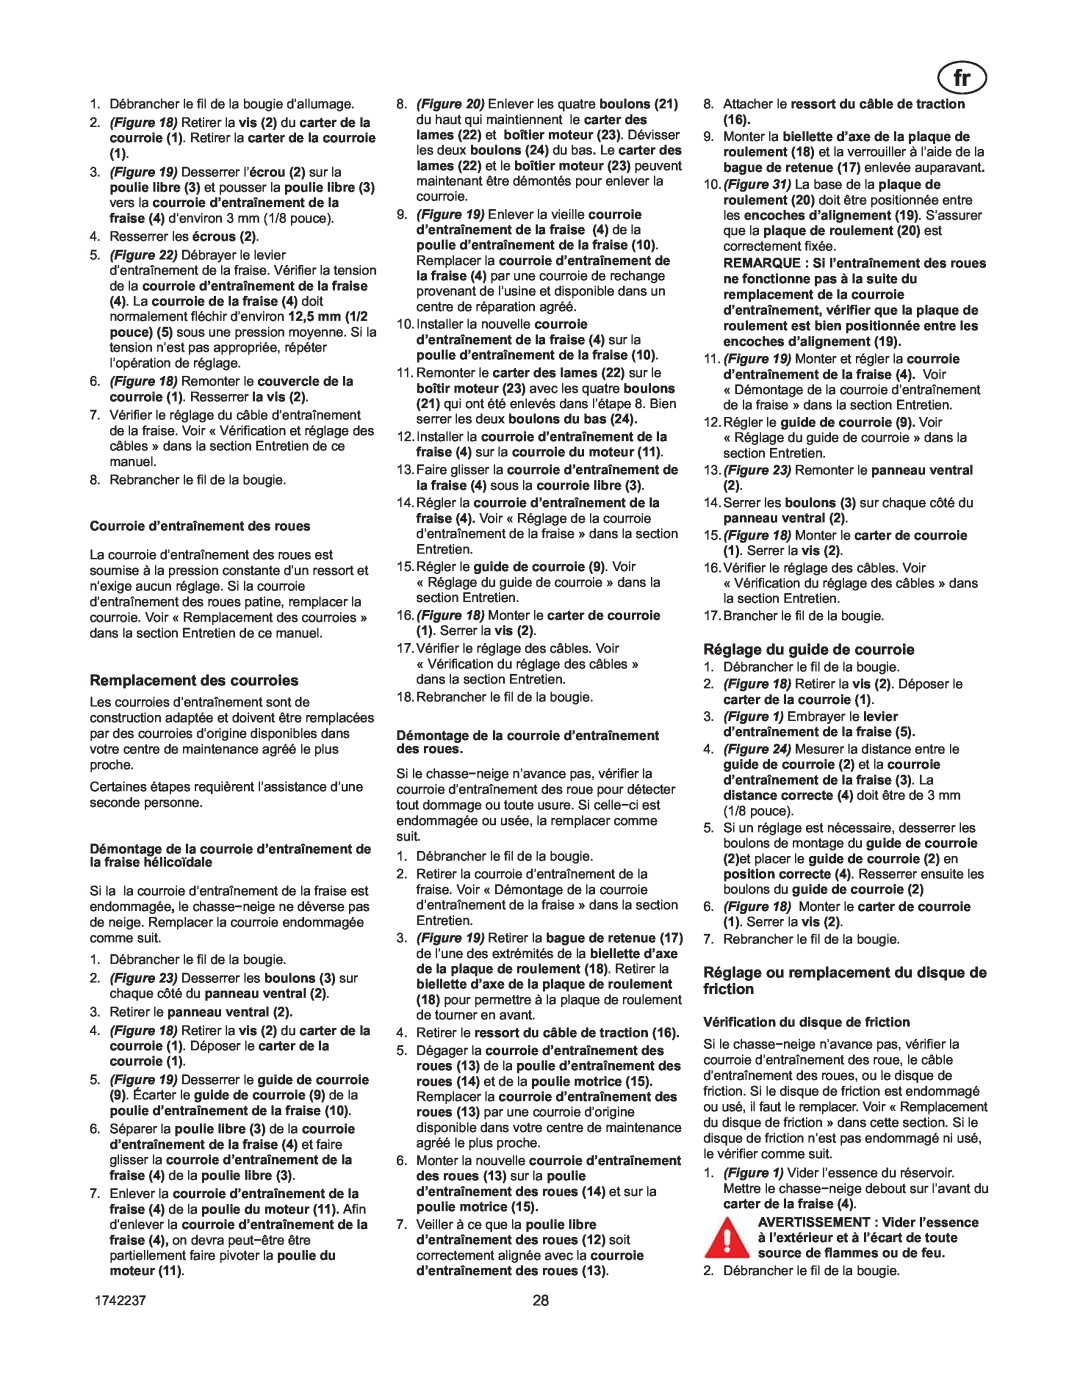 Murray TP 199-4955-00-LW-R, 1740873 manual Remplacement des courroies, Réglage du guide de courroie 